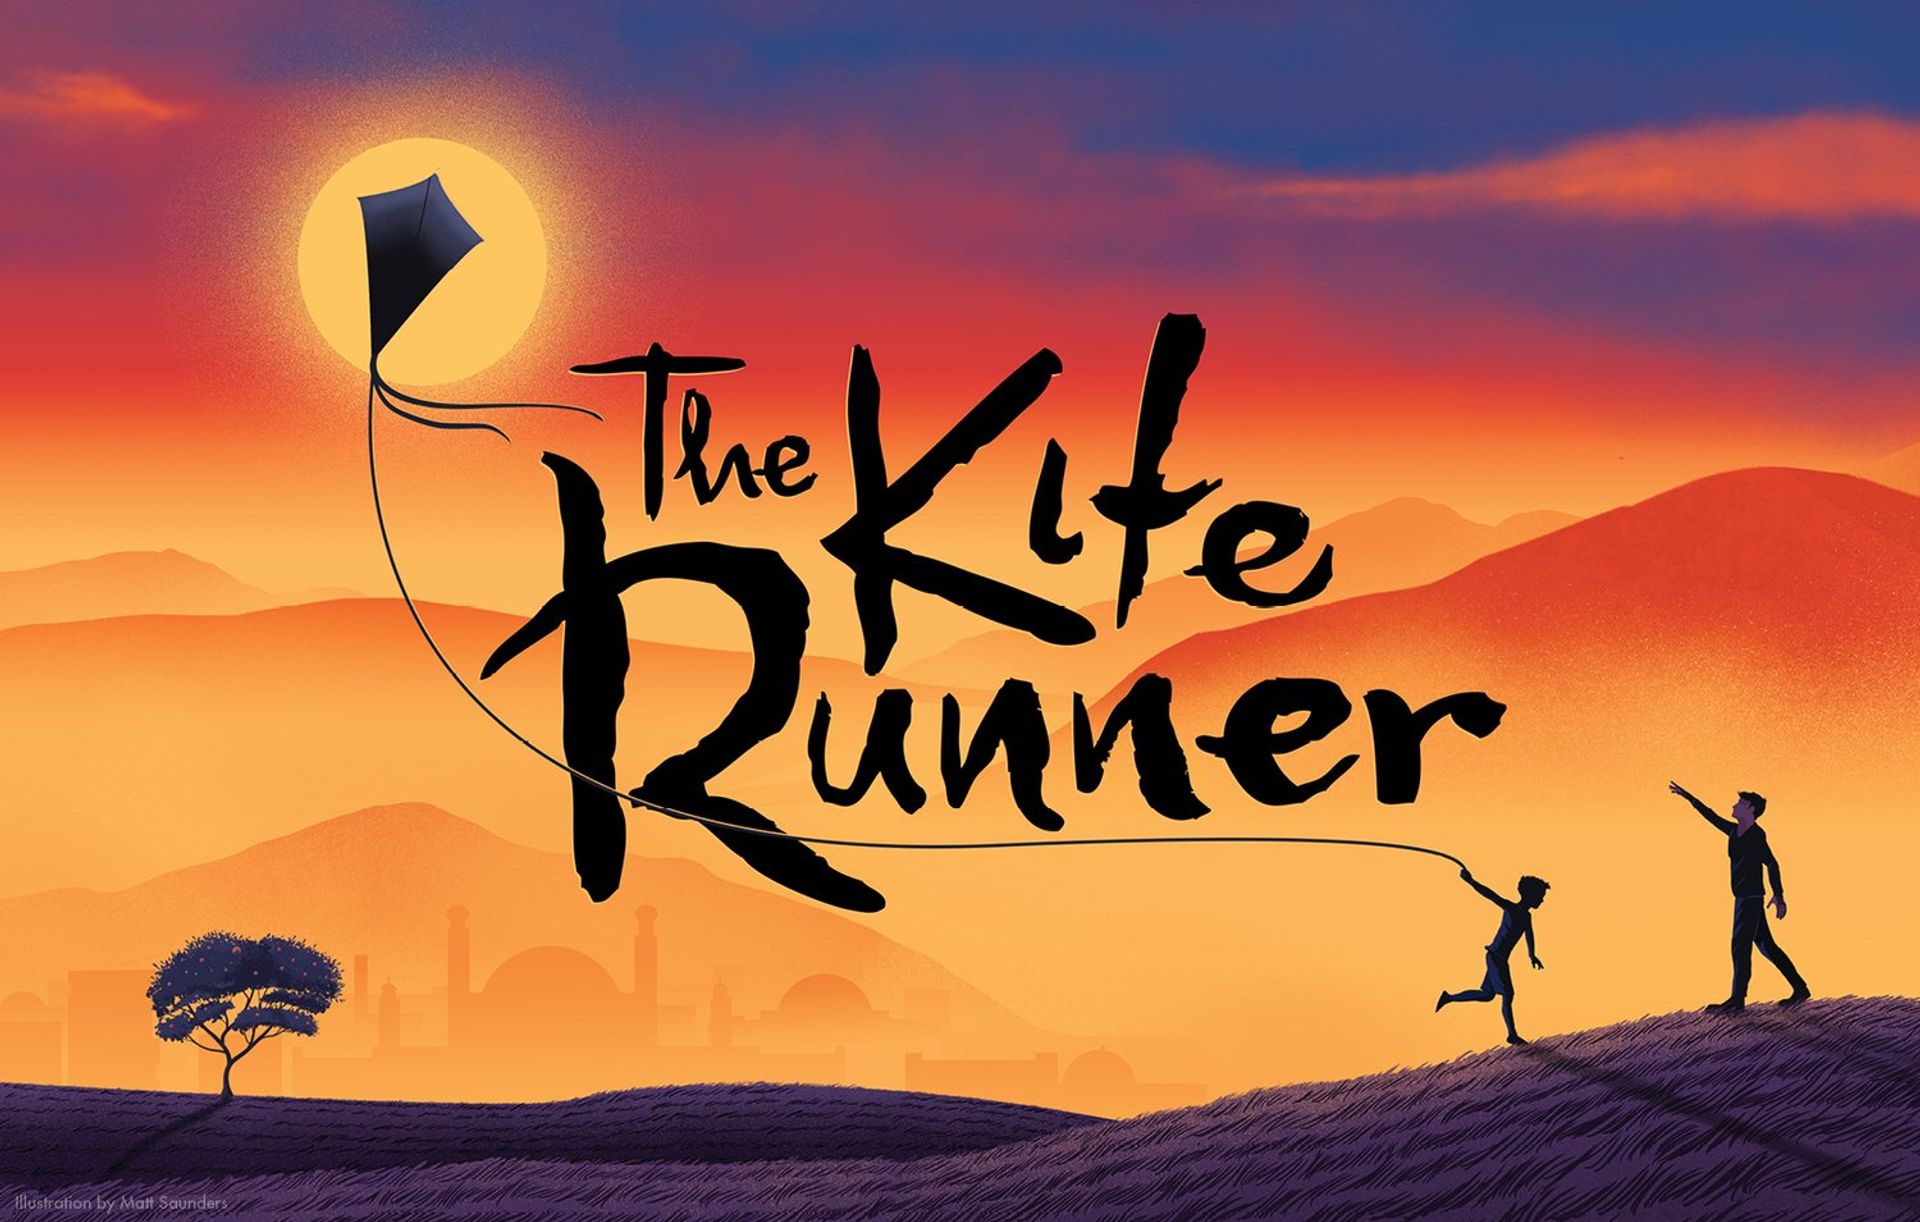 Matt Saunders' illustration for the 'Kite Runner' stage adaptation